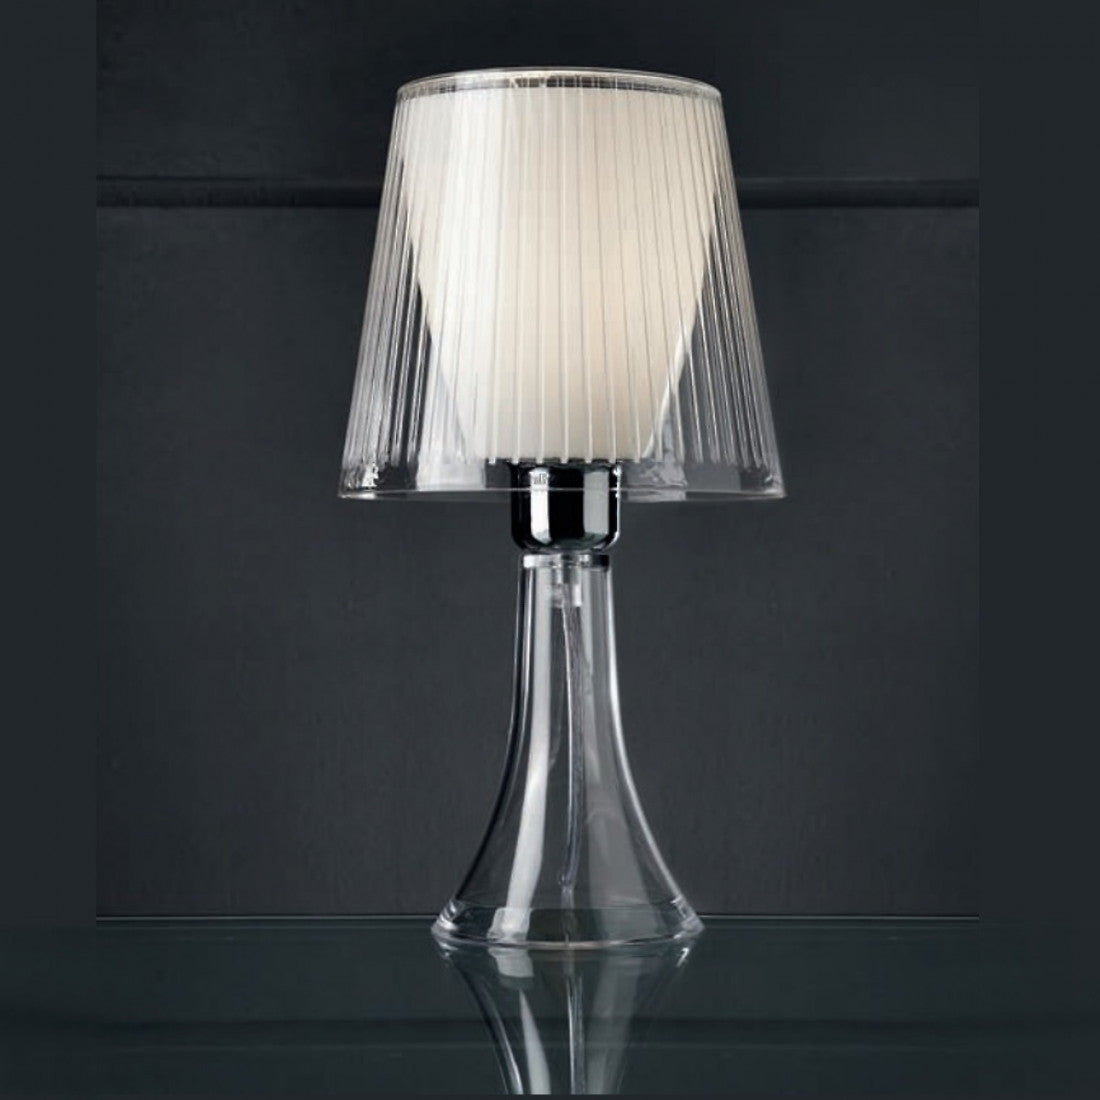 Abat-jour illuminando jolly p e27 led lampada tavolo moderna elegante colorata acrilico, colore trasparente